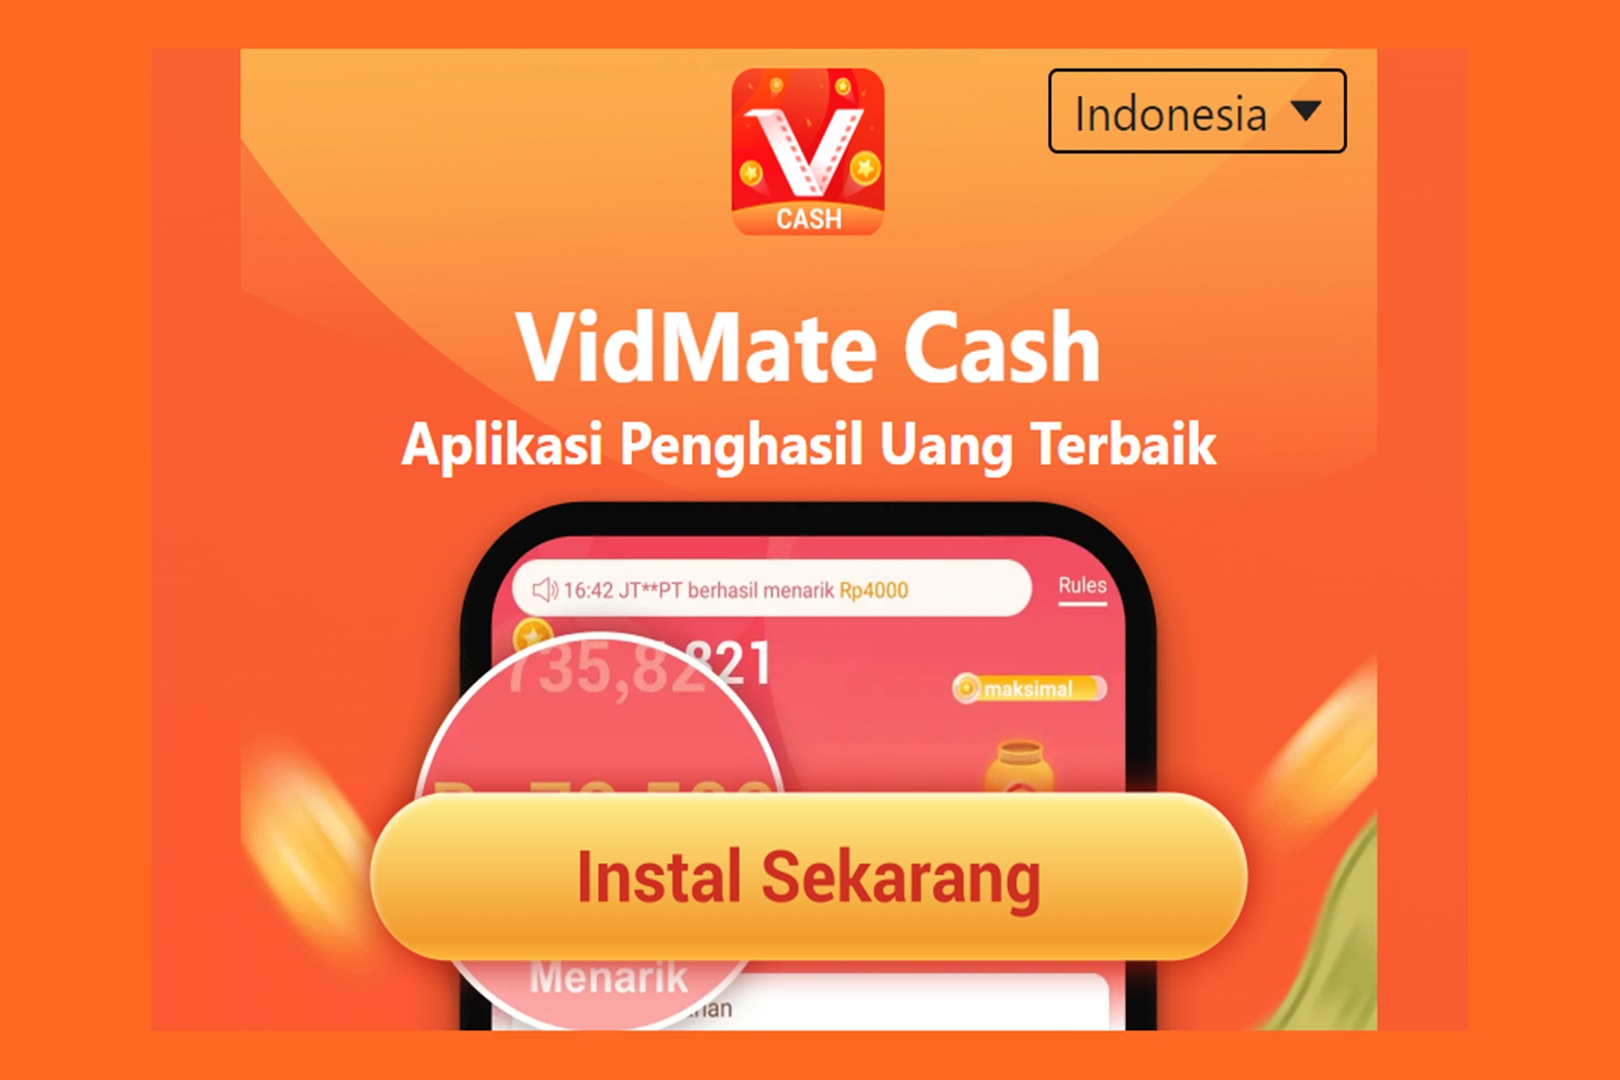 VidMate Cash: Aplikasi Penghasil Uang Hanya dengan Menonton Video, Begini Cara Kerjanya